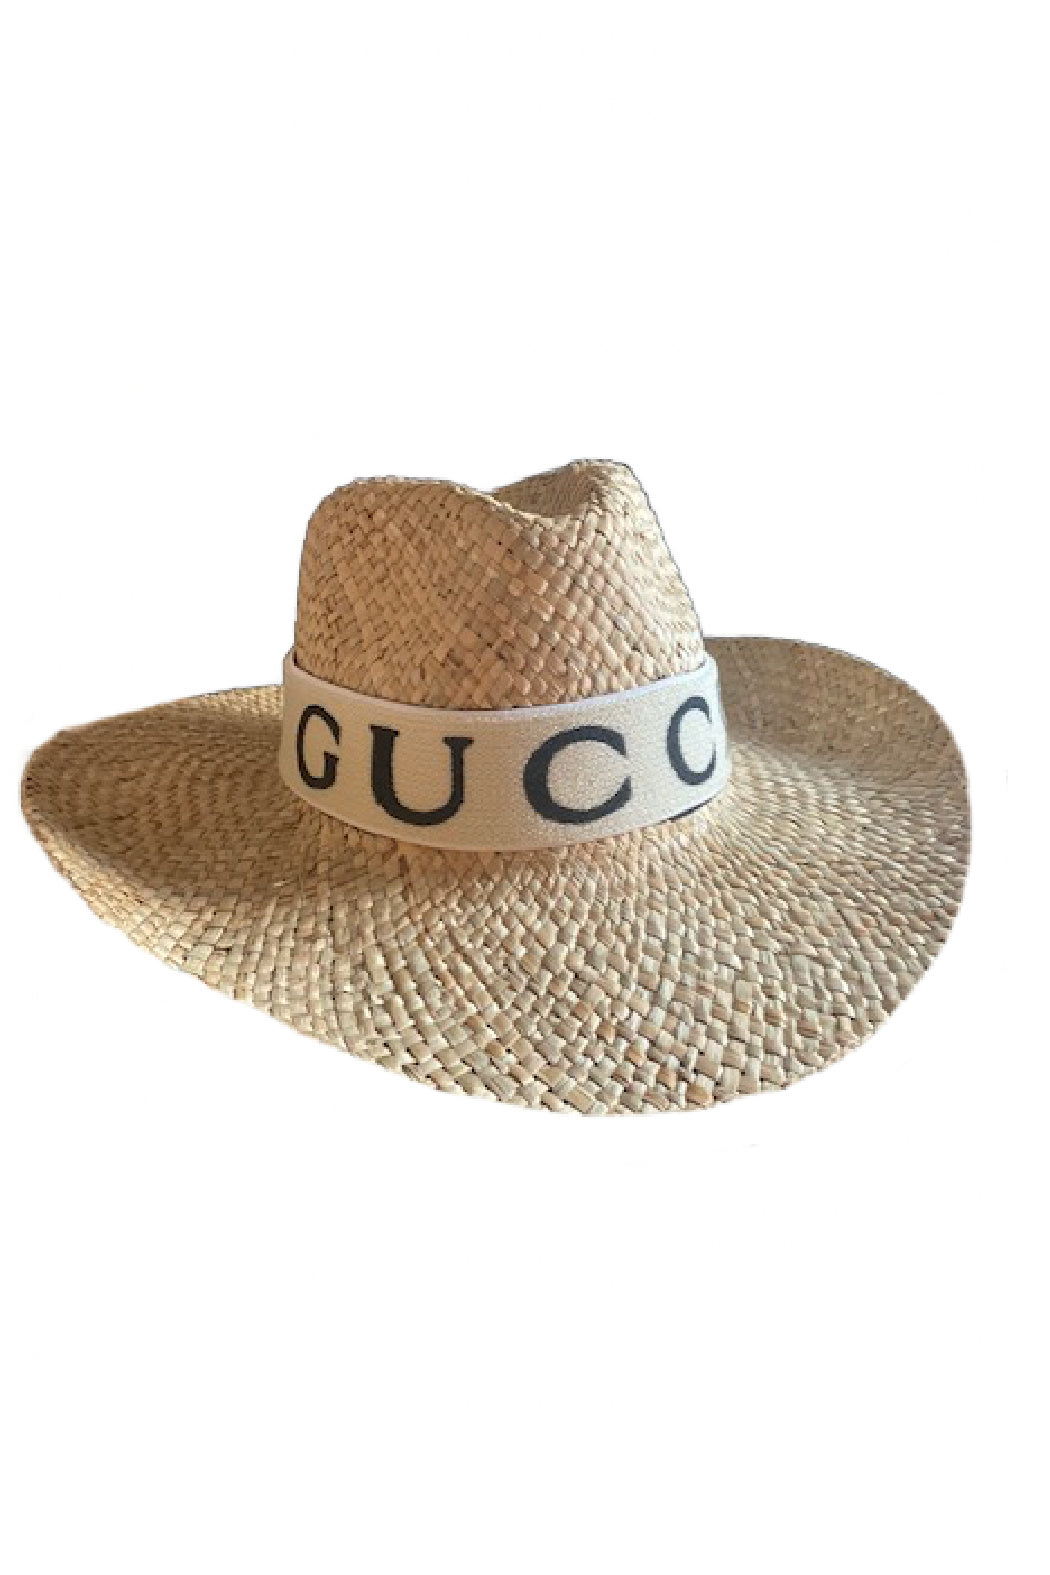 G Banded Upcycled Panama Hat